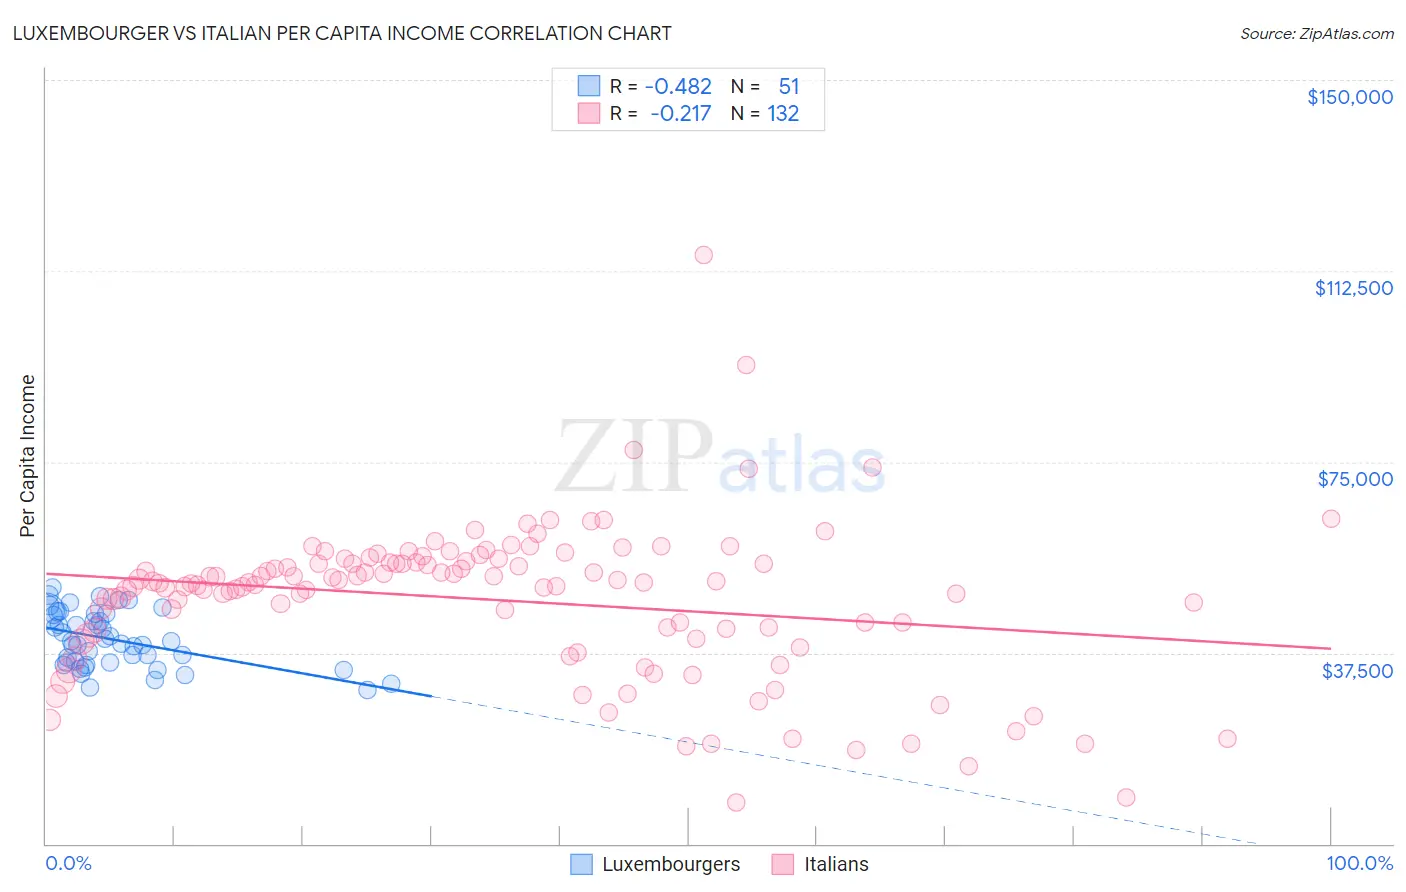 Luxembourger vs Italian Per Capita Income